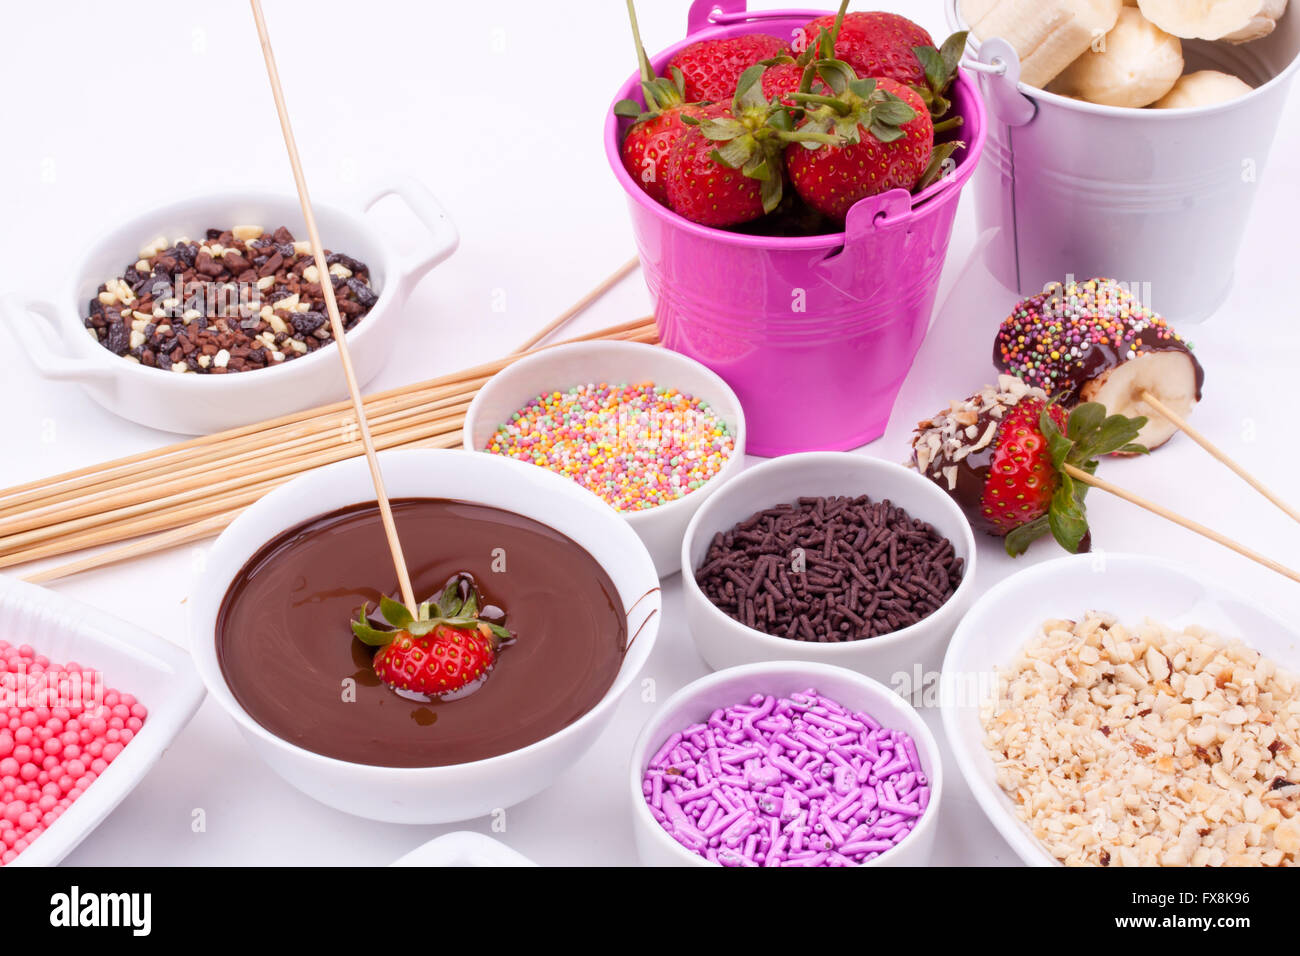 La Fonduta di cioccolato con frutta e un pizzico di zucchero Foto Stock